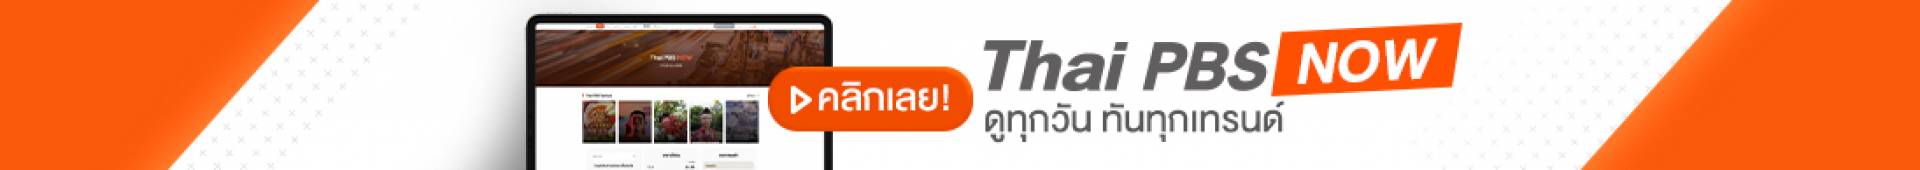 โฉมใหม่! Thai PBS Now ดูทุกวัน ทันทุกเทรนด์